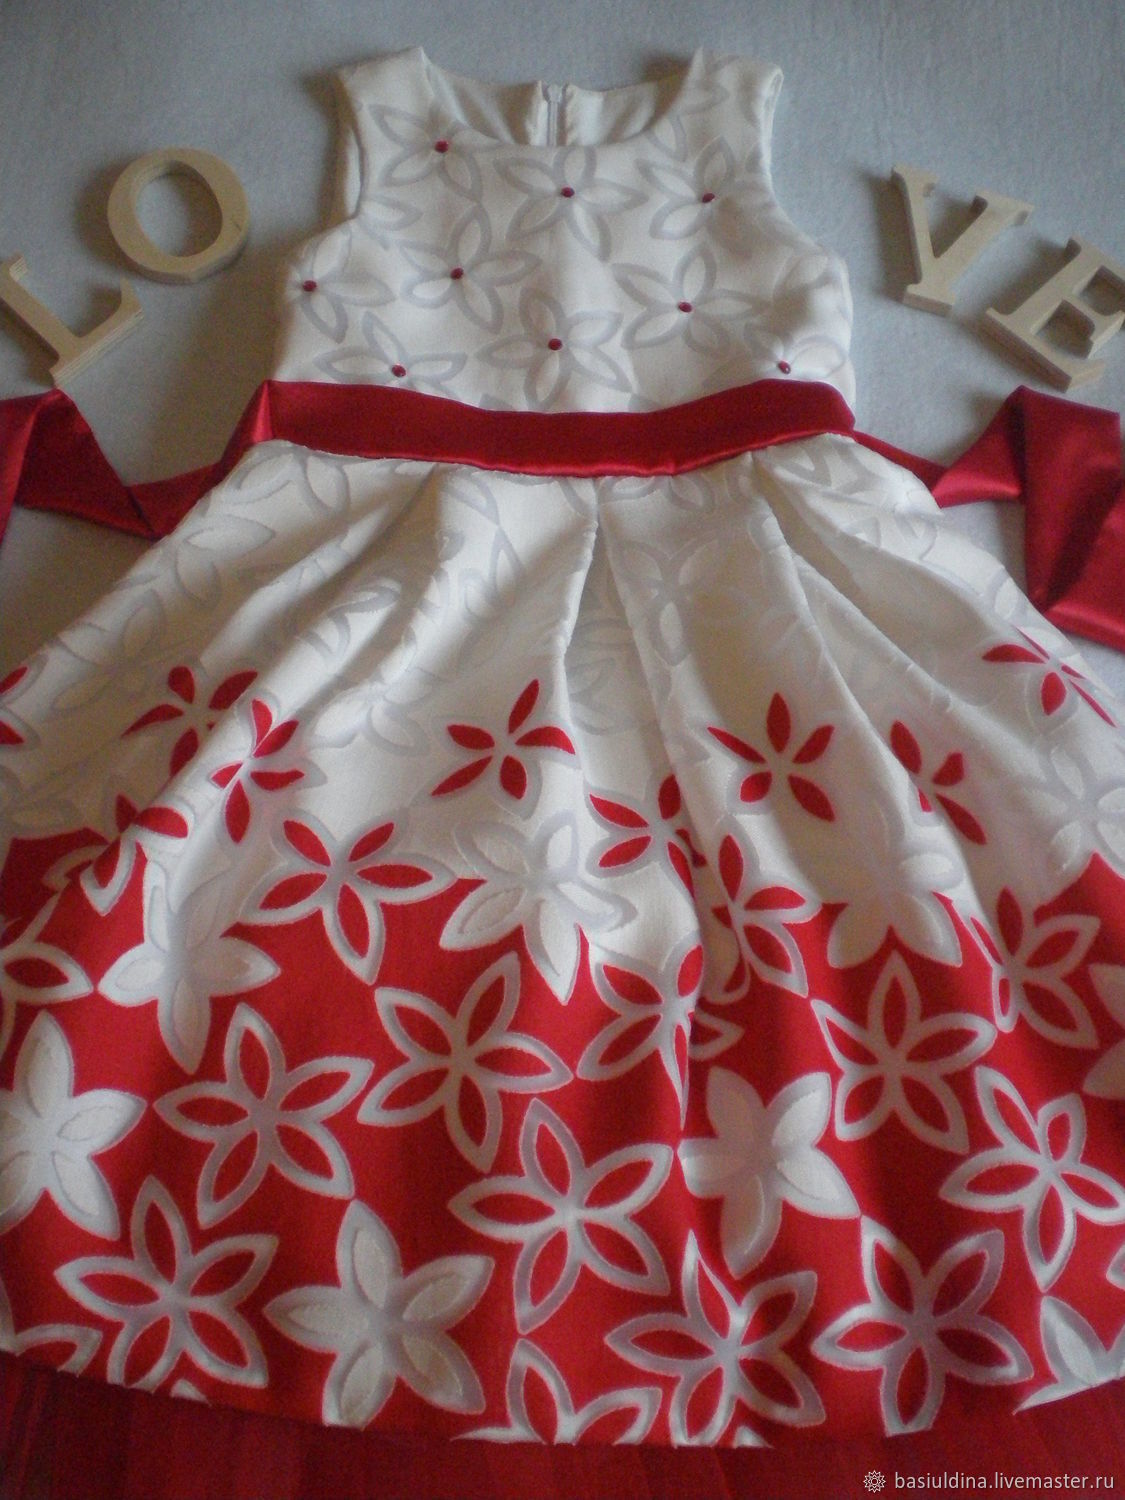 Нарядное платье для девочки "Камилла" на выпускной, день рождение